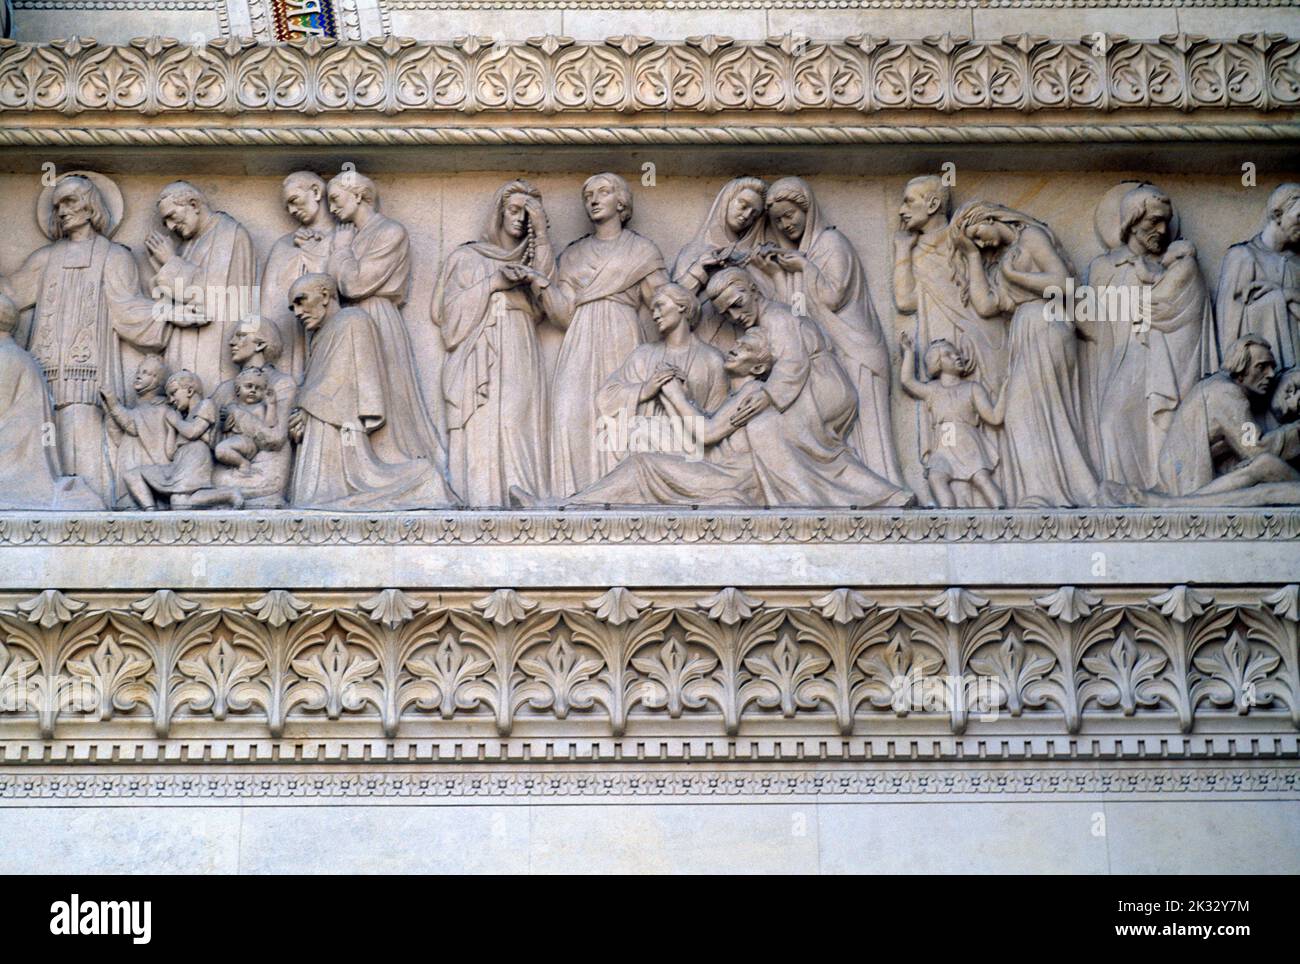 Lyon France Basilica Notre Dame de Fourviere Carving Detail Stock Photo